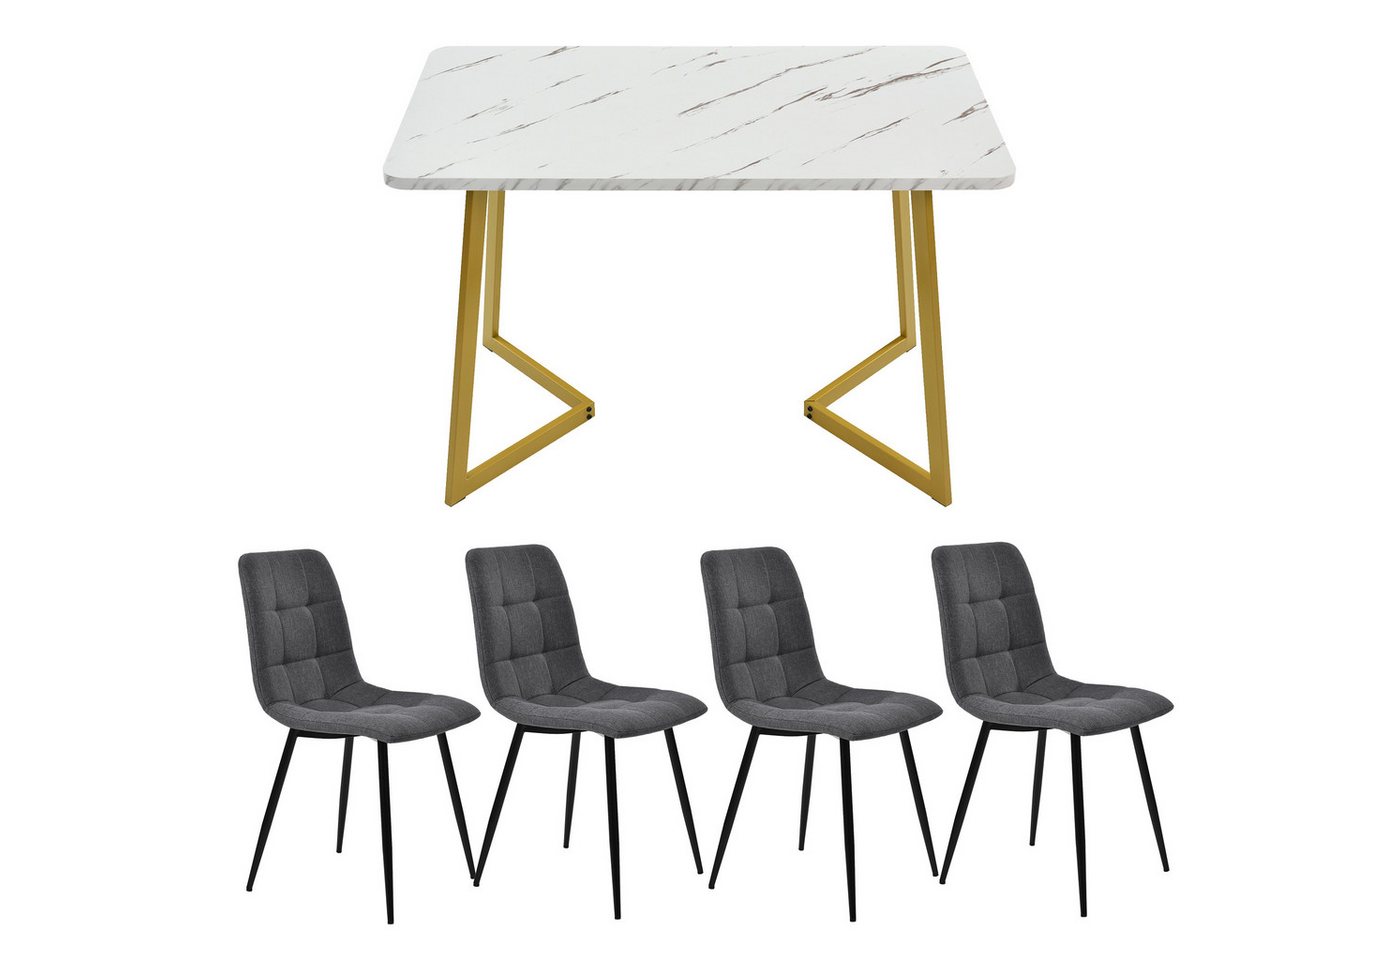 GLIESE Esstisch Esstisch mit 4 Stühlen Set, Moderner Küchentisch Set von GLIESE